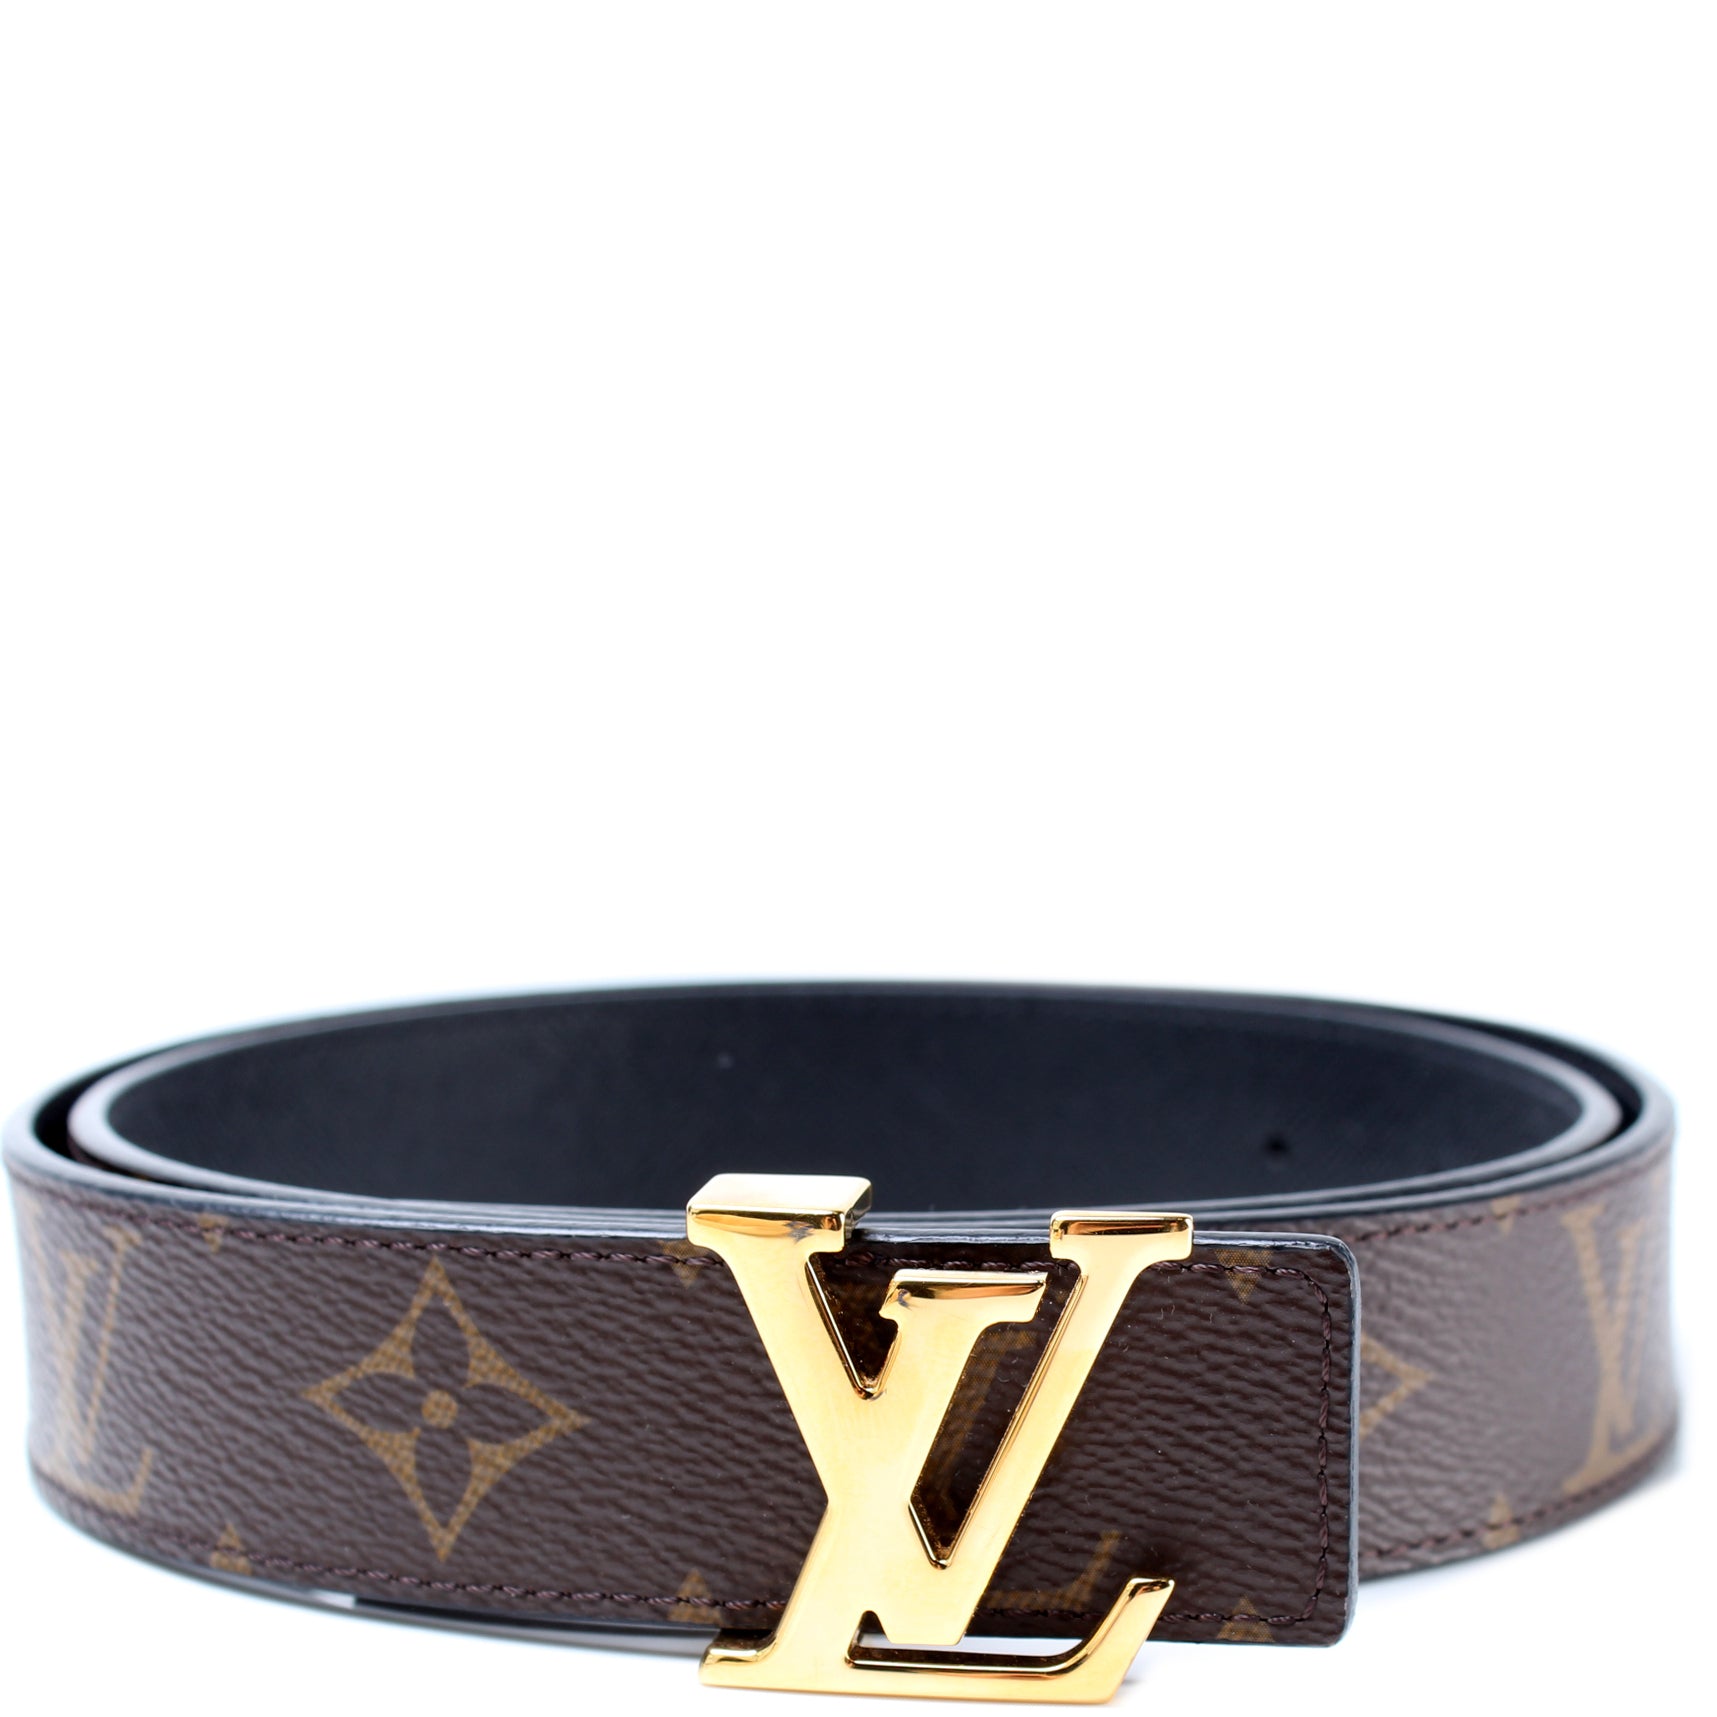 Louis Vuitton LV Initiales 30mm Reversible Belt Black + Calf Leather. Size 80 cm